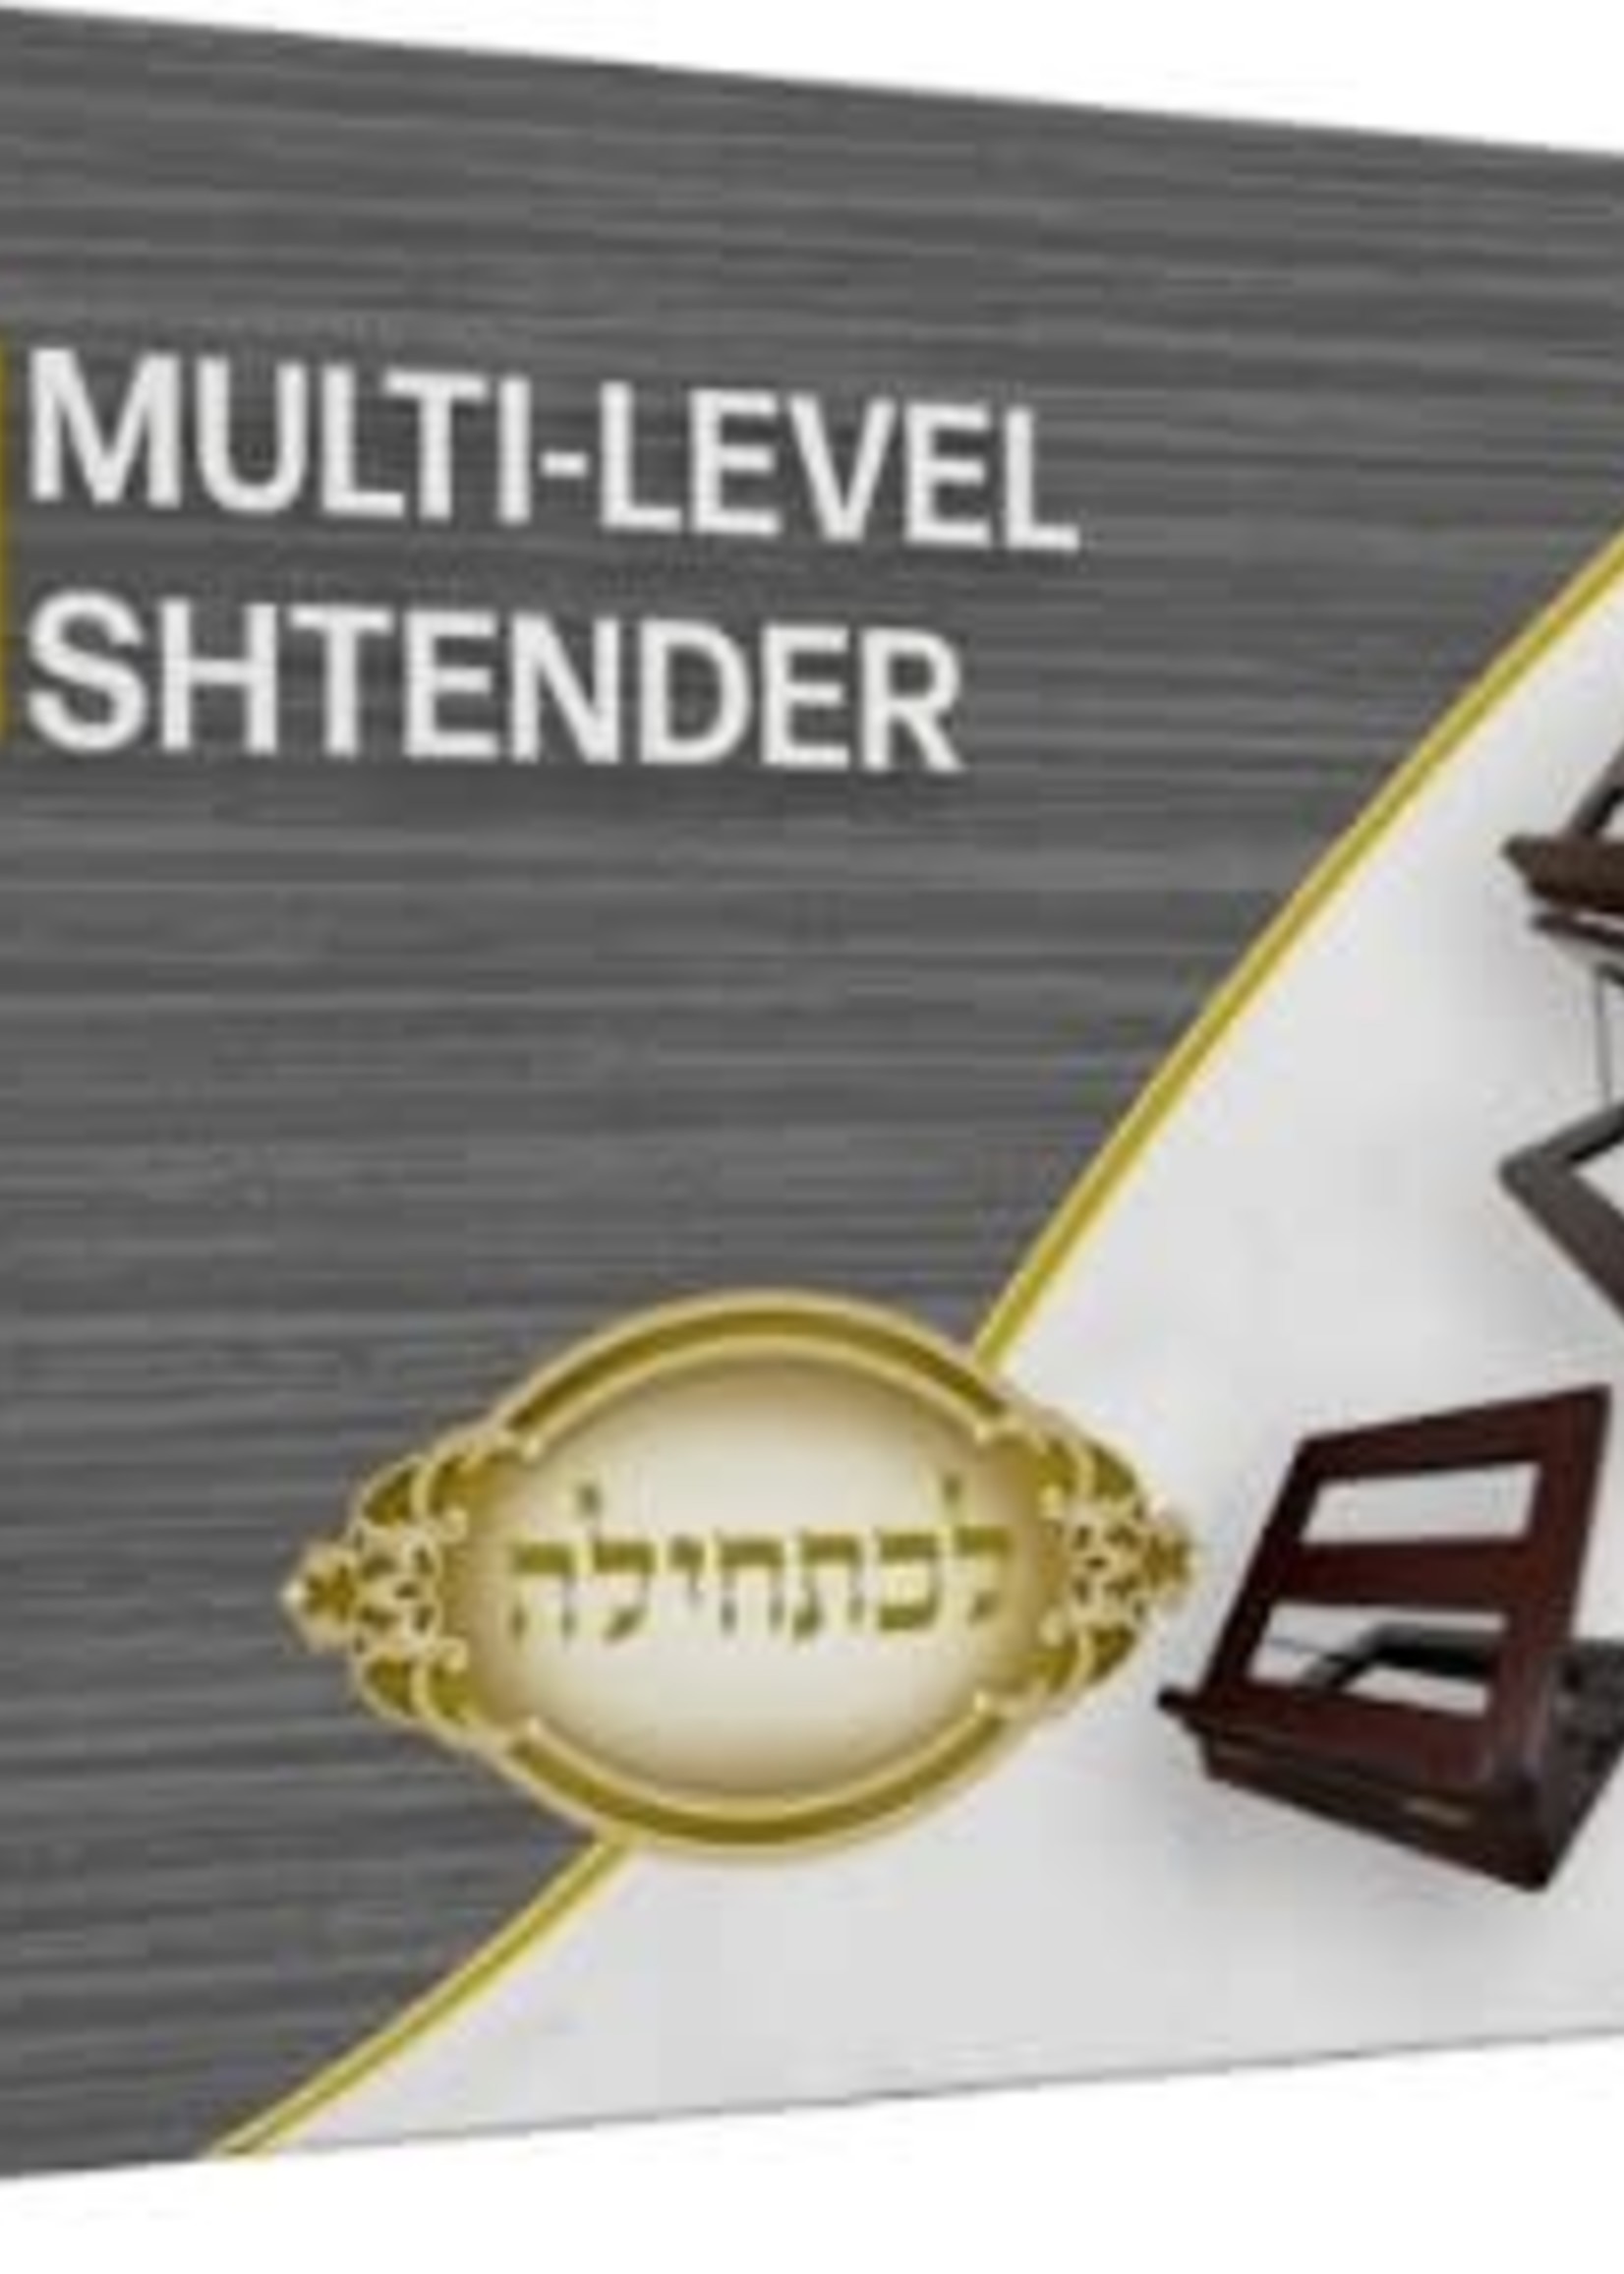 Multi Level Shtender for Sitting or Standing